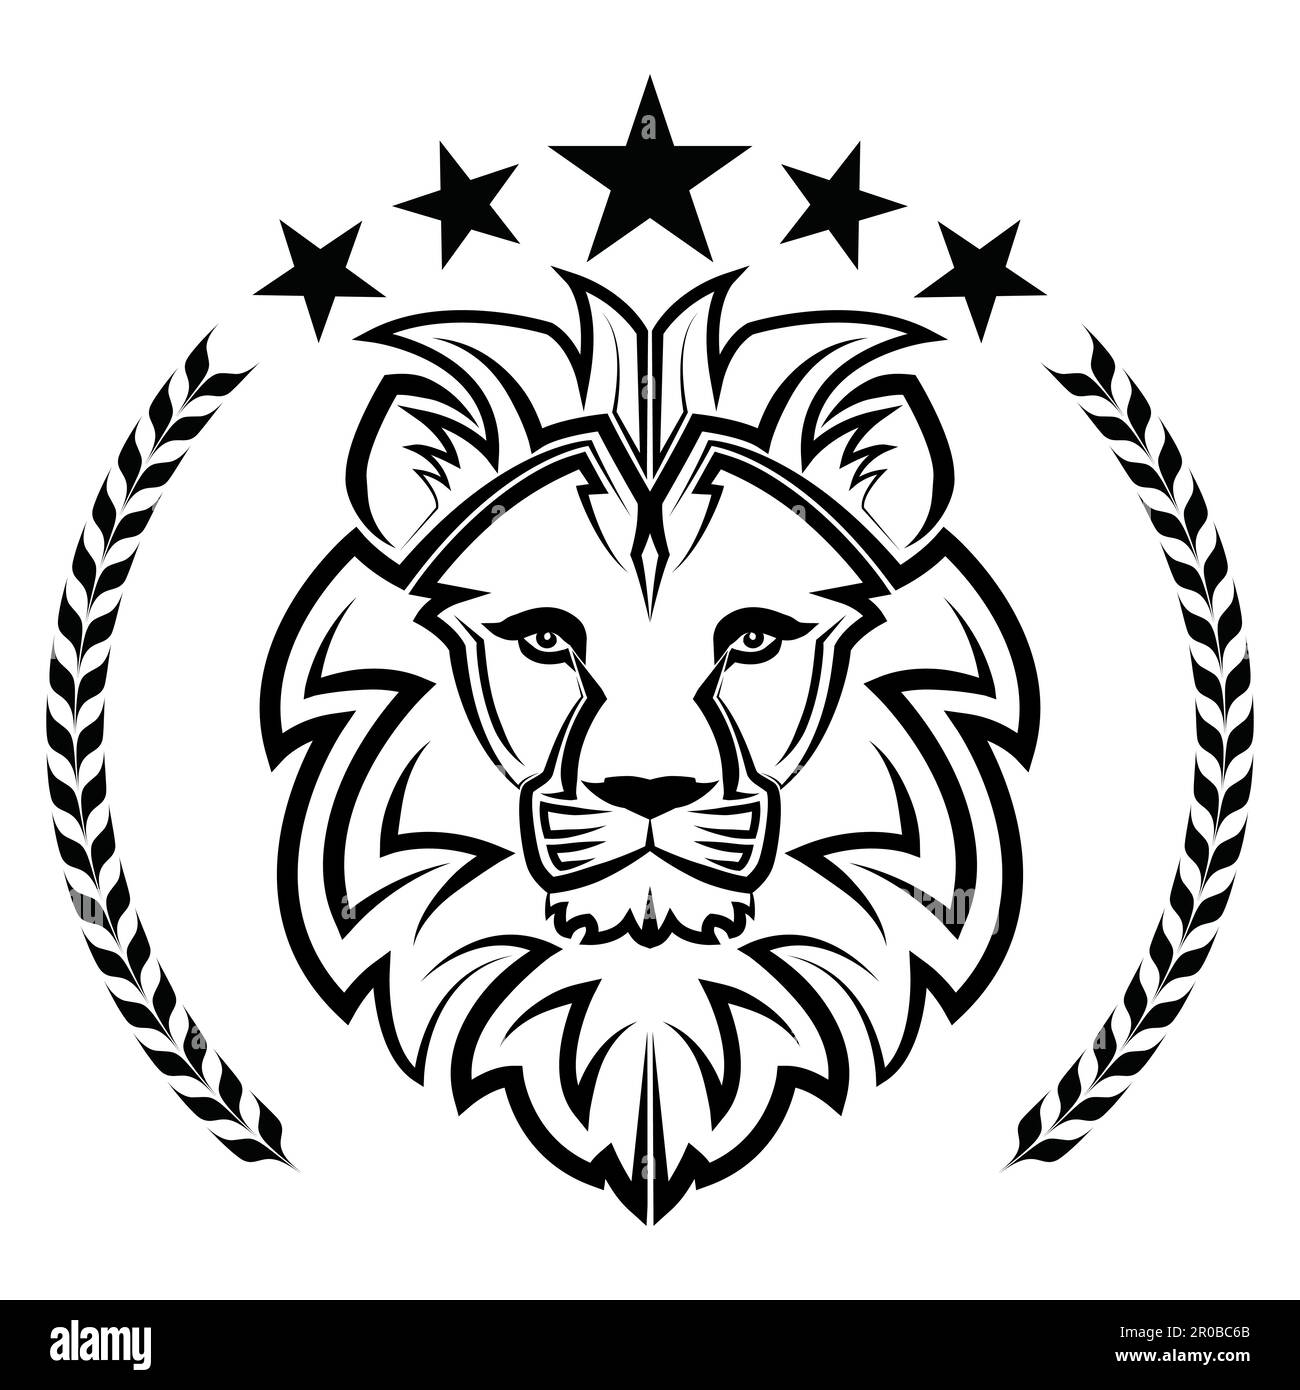 L'art de ligne noir et blanc de l'avant de la tête de lion il est signe de leo zodiac bonne utilisation pour symbole mascotte icône avatar tatouage T logo de chemise ou a Illustration de Vecteur